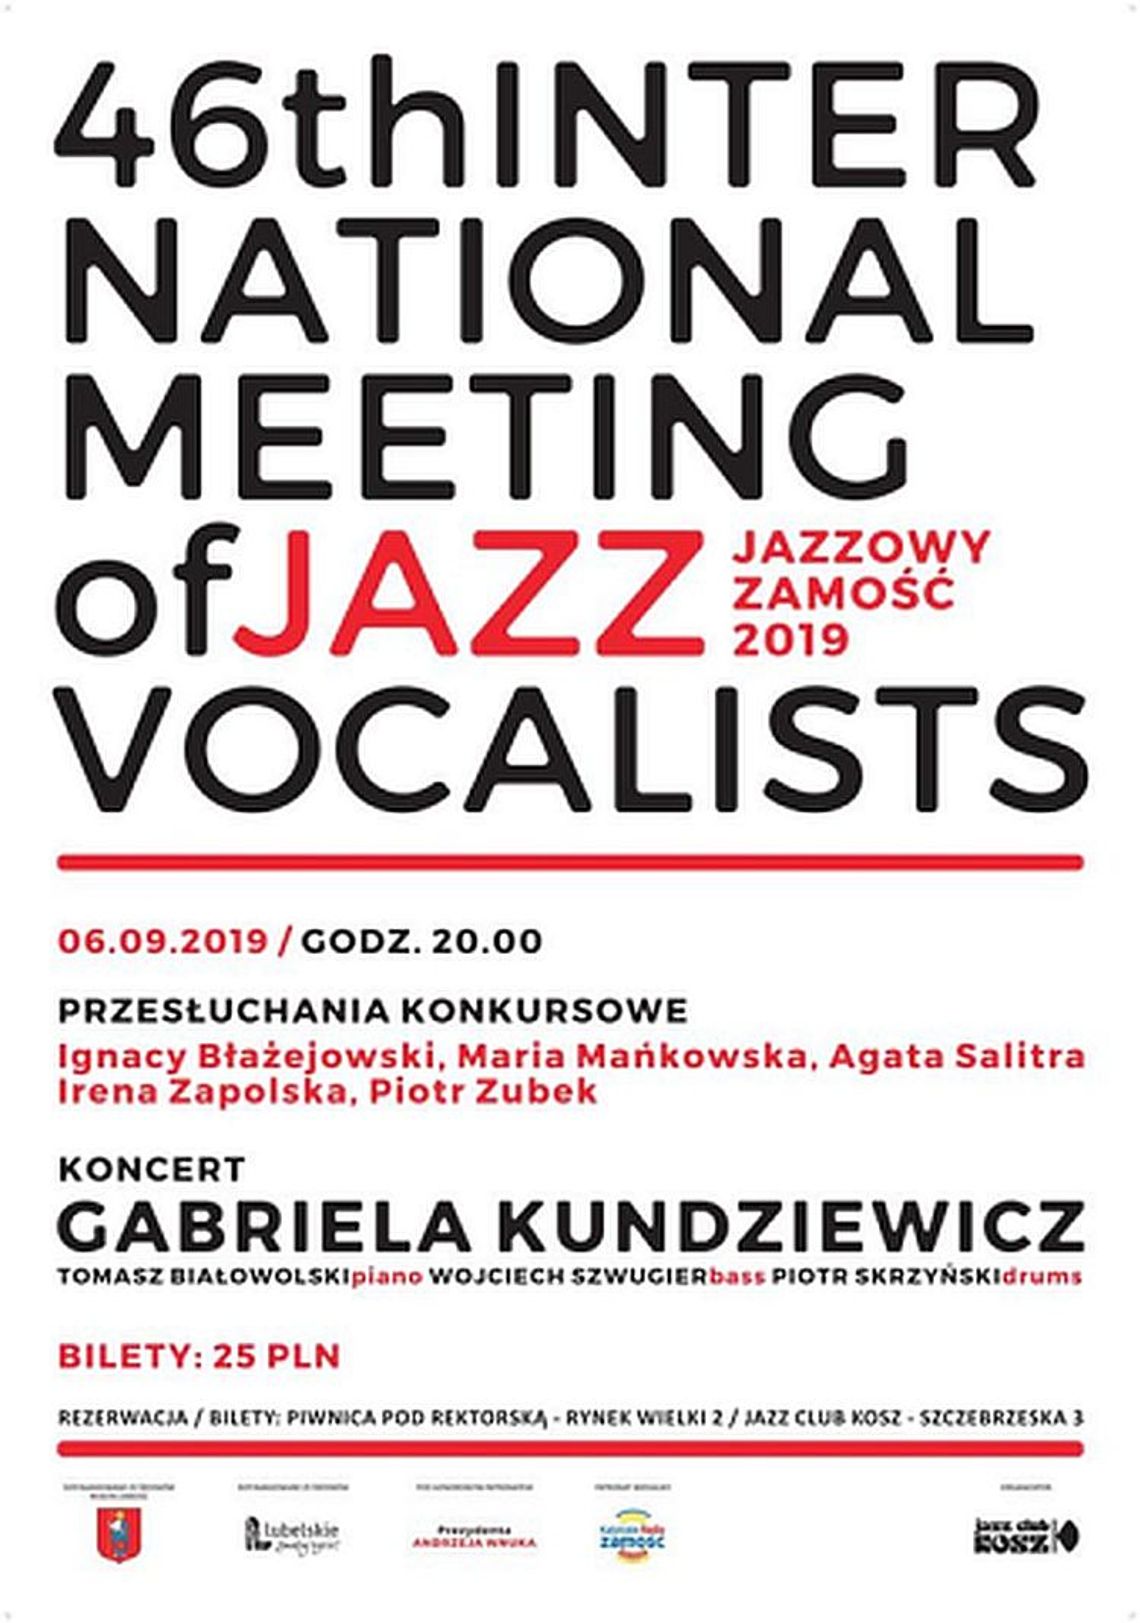 Grzegorz Obst o 46 Międzynarodowych Spotkaniach Wokalistów Jazzowych 